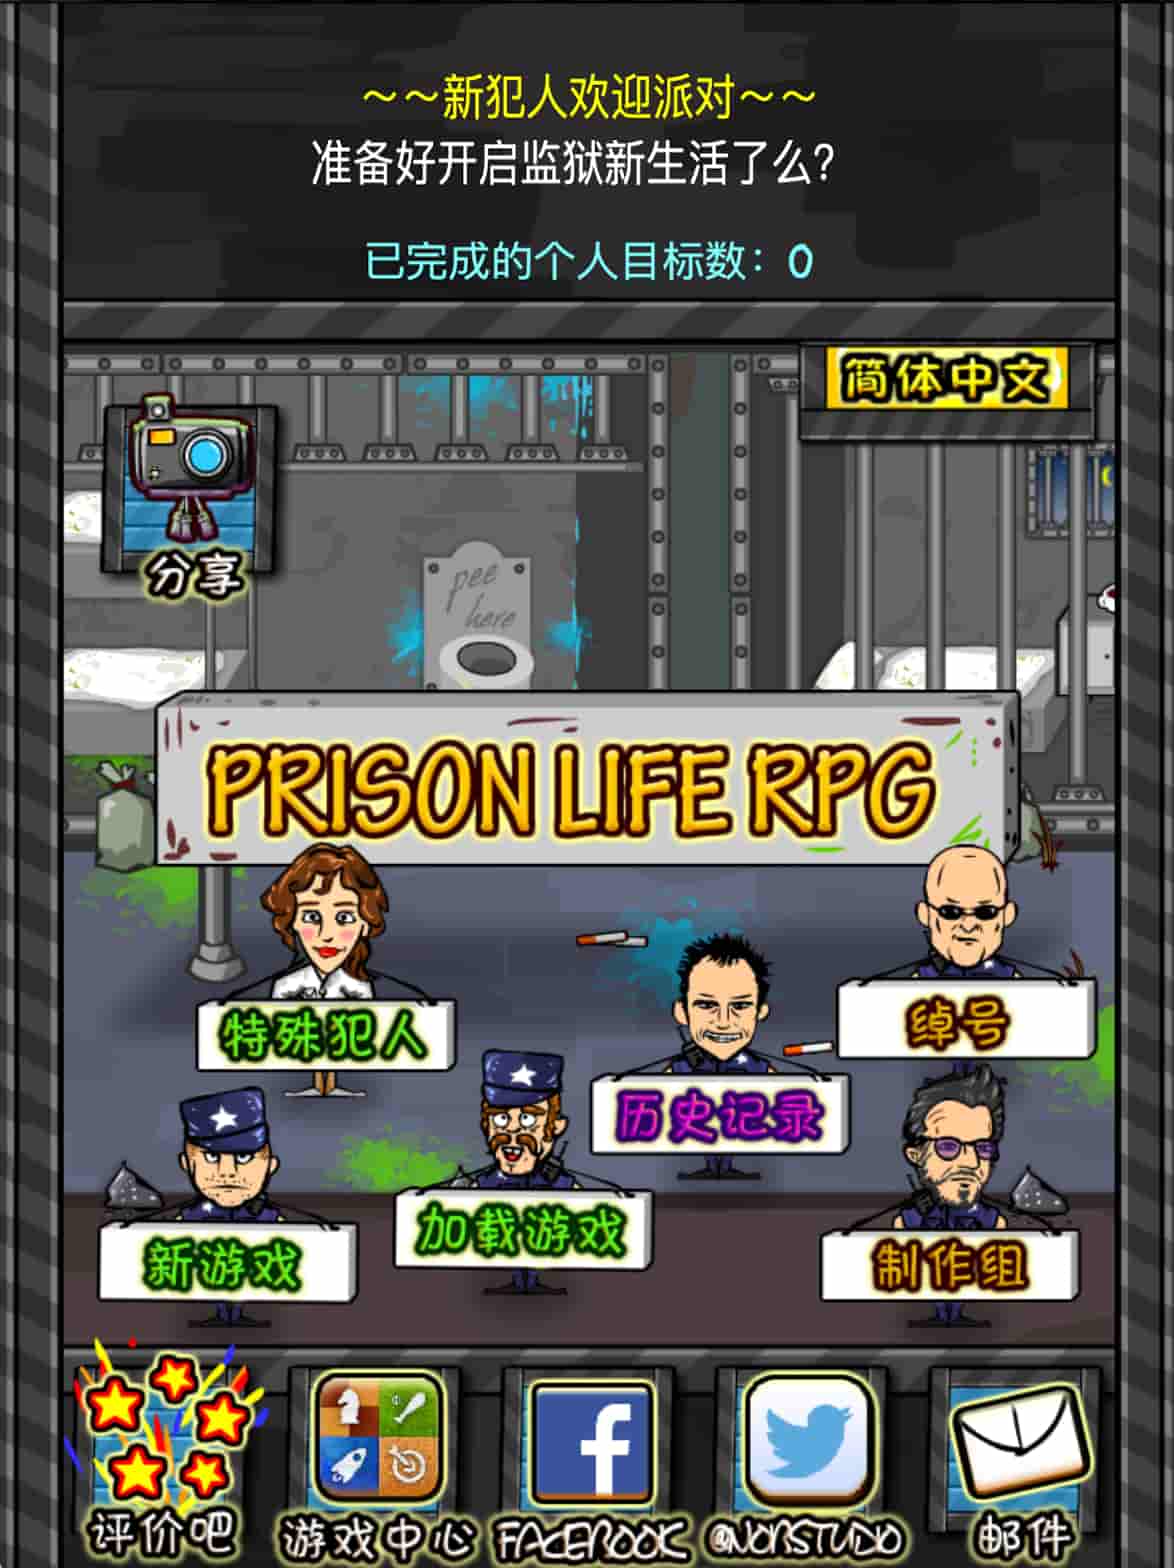 监狱人生 RPG